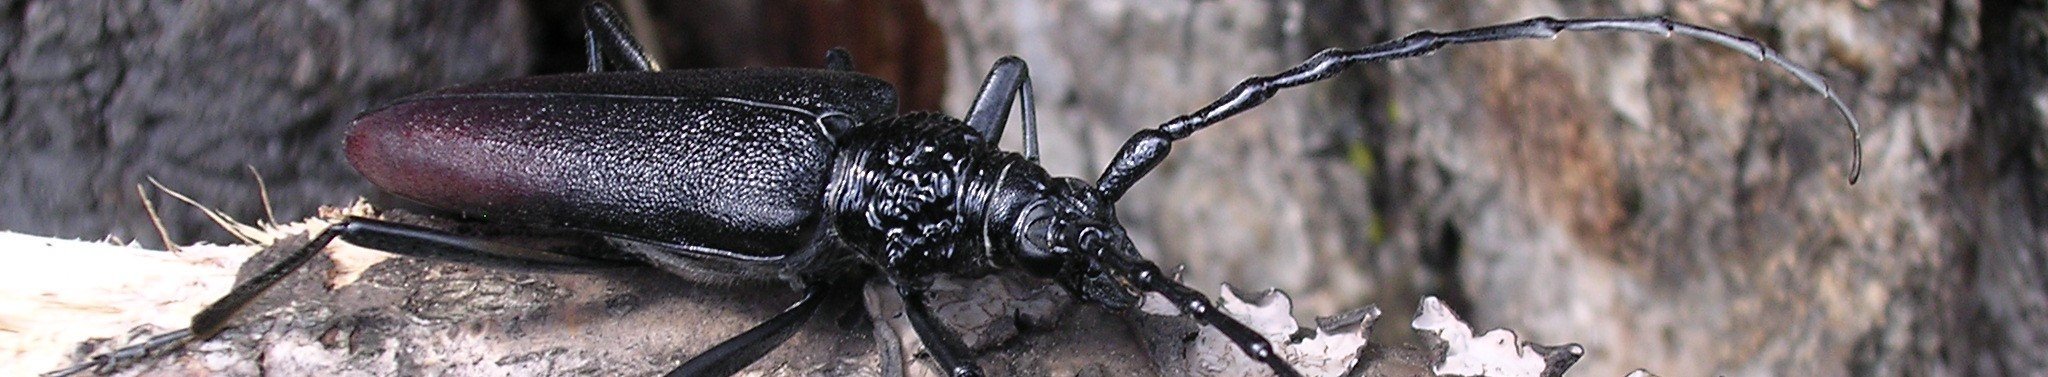 länglicher, braun schwarzer Käfer mit langen Fühlern